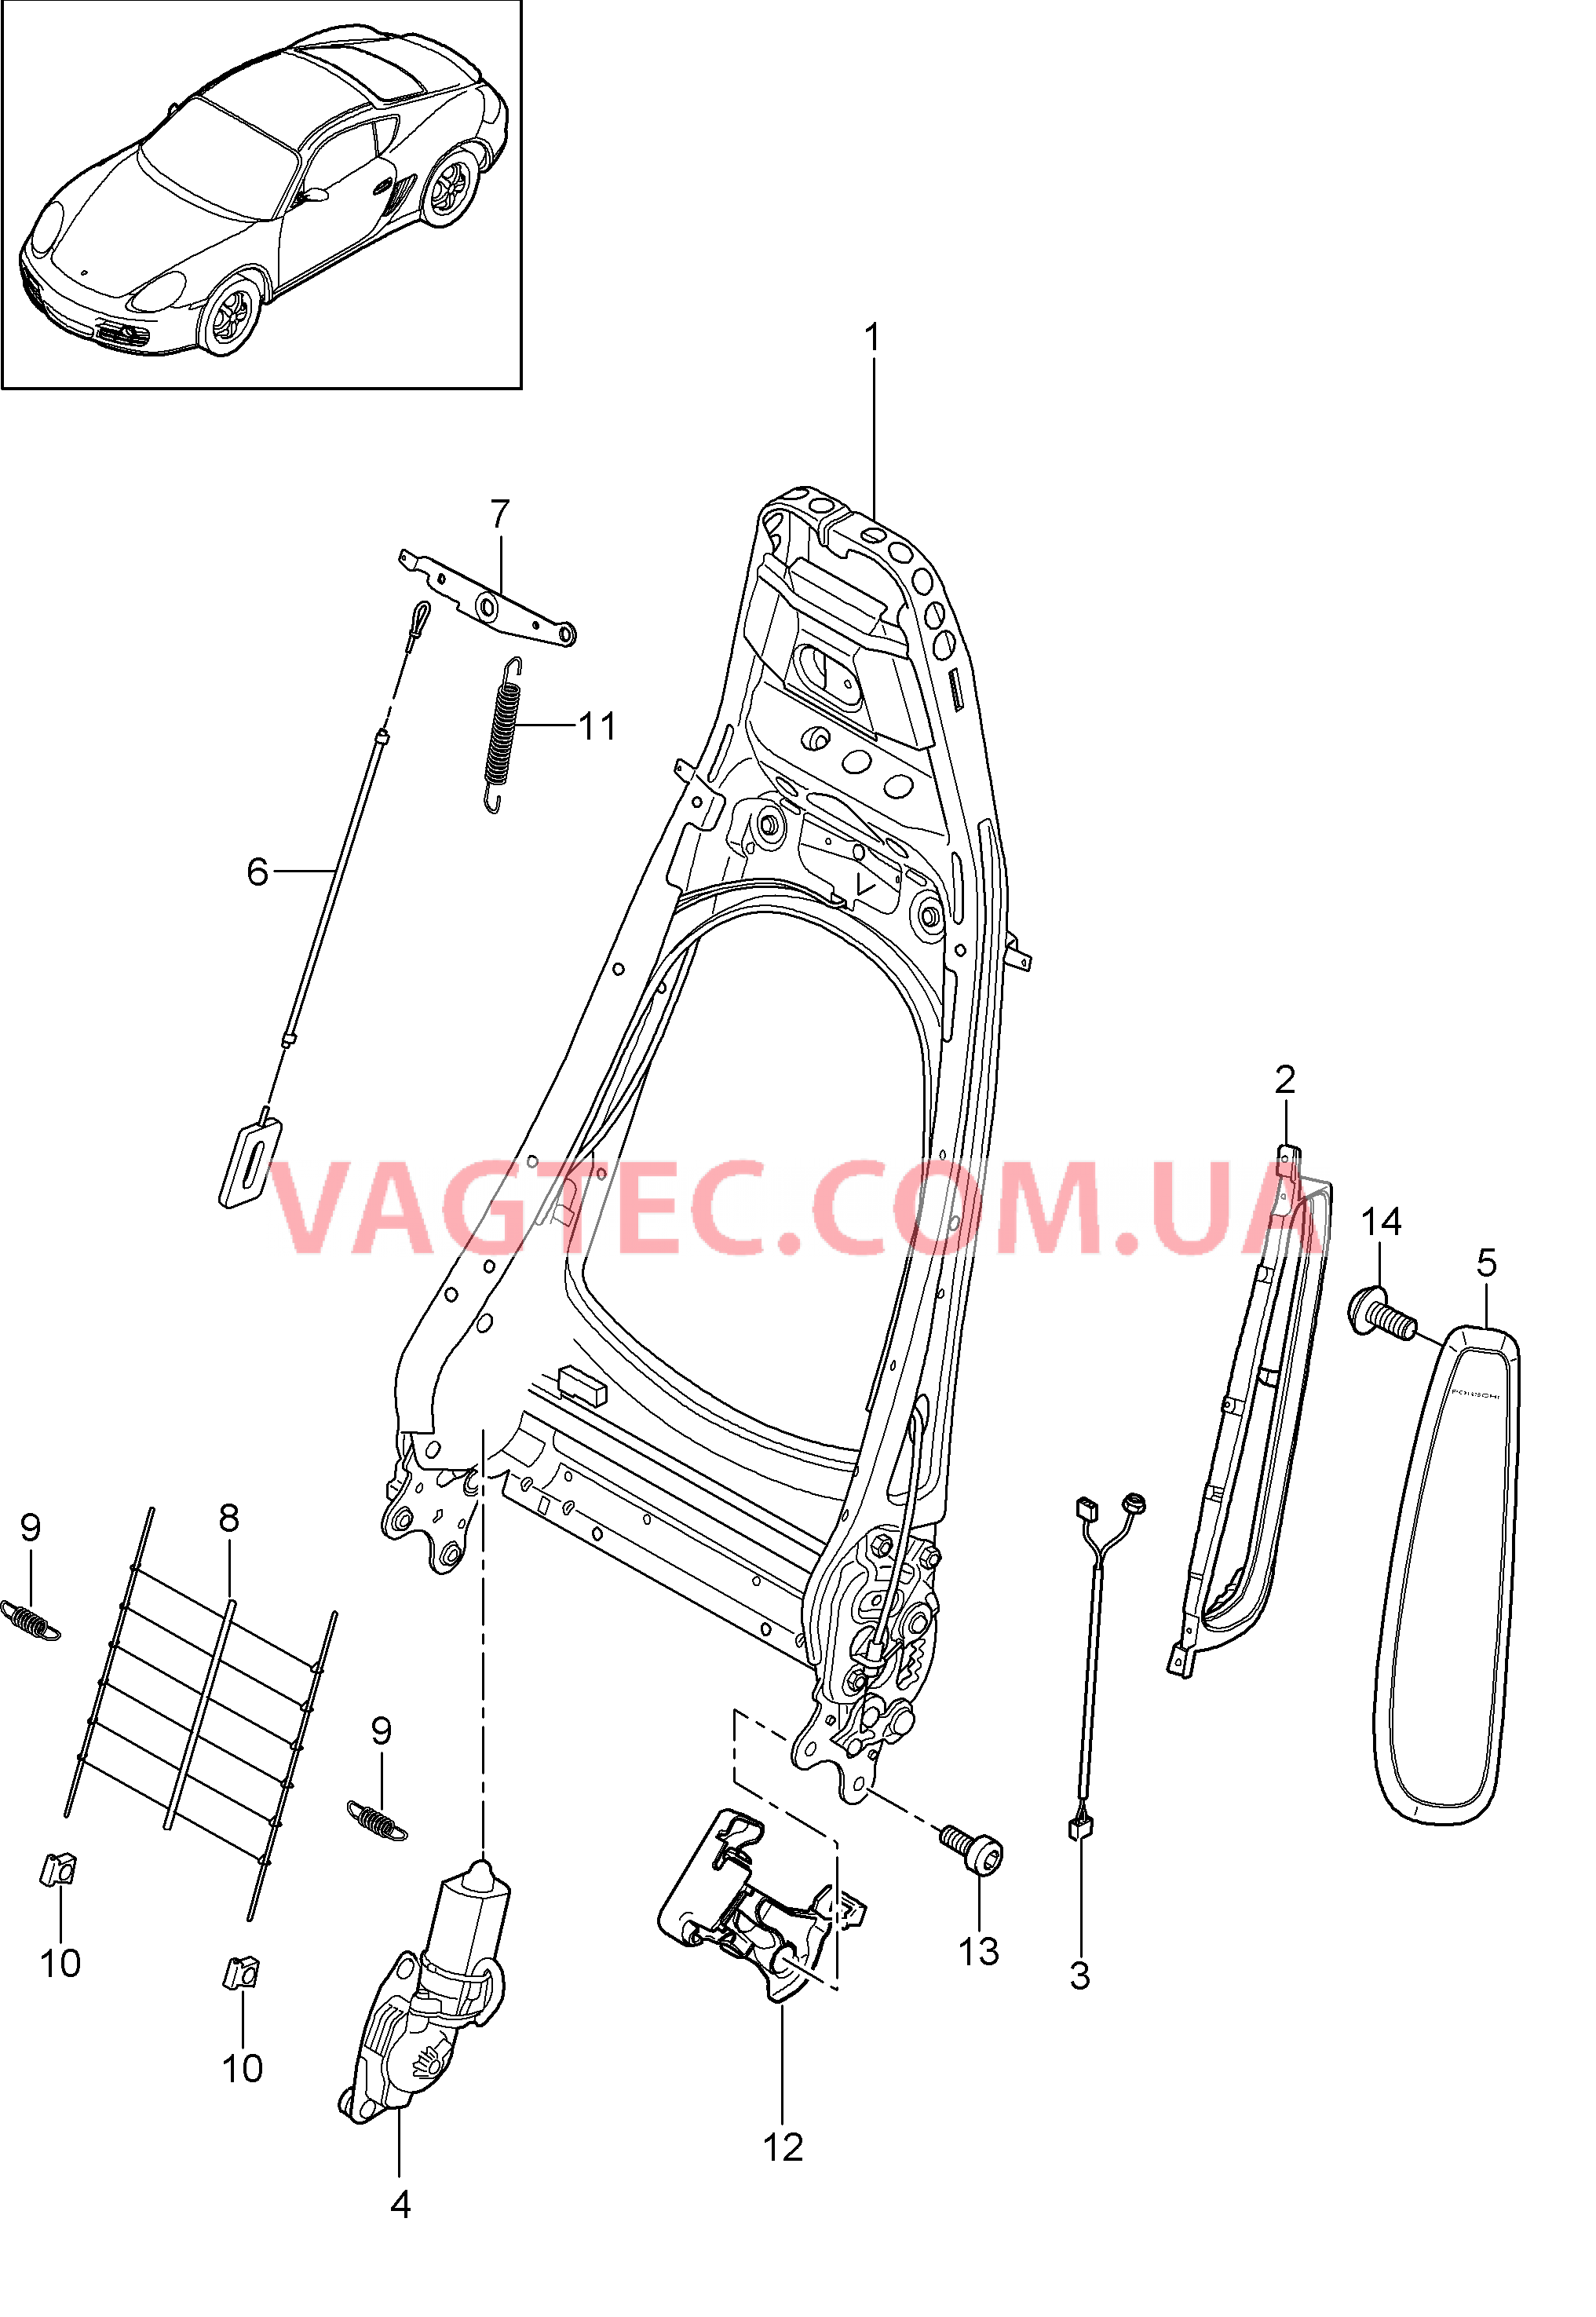 817-006 Каркас спинки, Серийное сиденье, Сиденье KOMFORT
						
						I369/370, I437/438 для PORSCHE Cayman 2009-2012